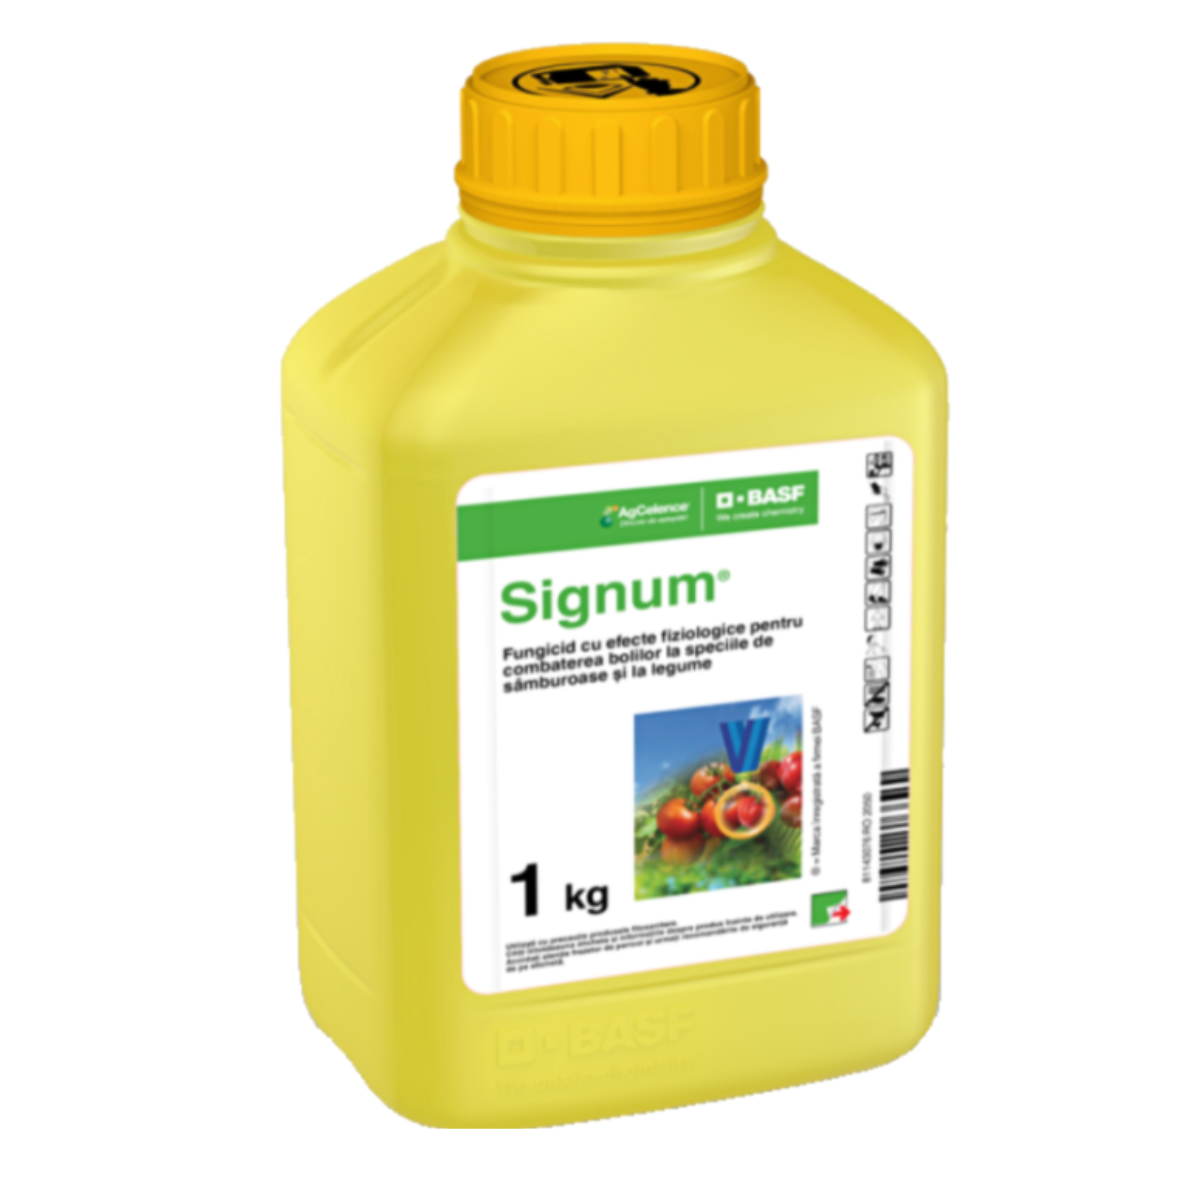 Fungicide - Fungicid pentru legume si pomi fructiferi, 1 Kg, Signum,  BASF, hectarul.ro